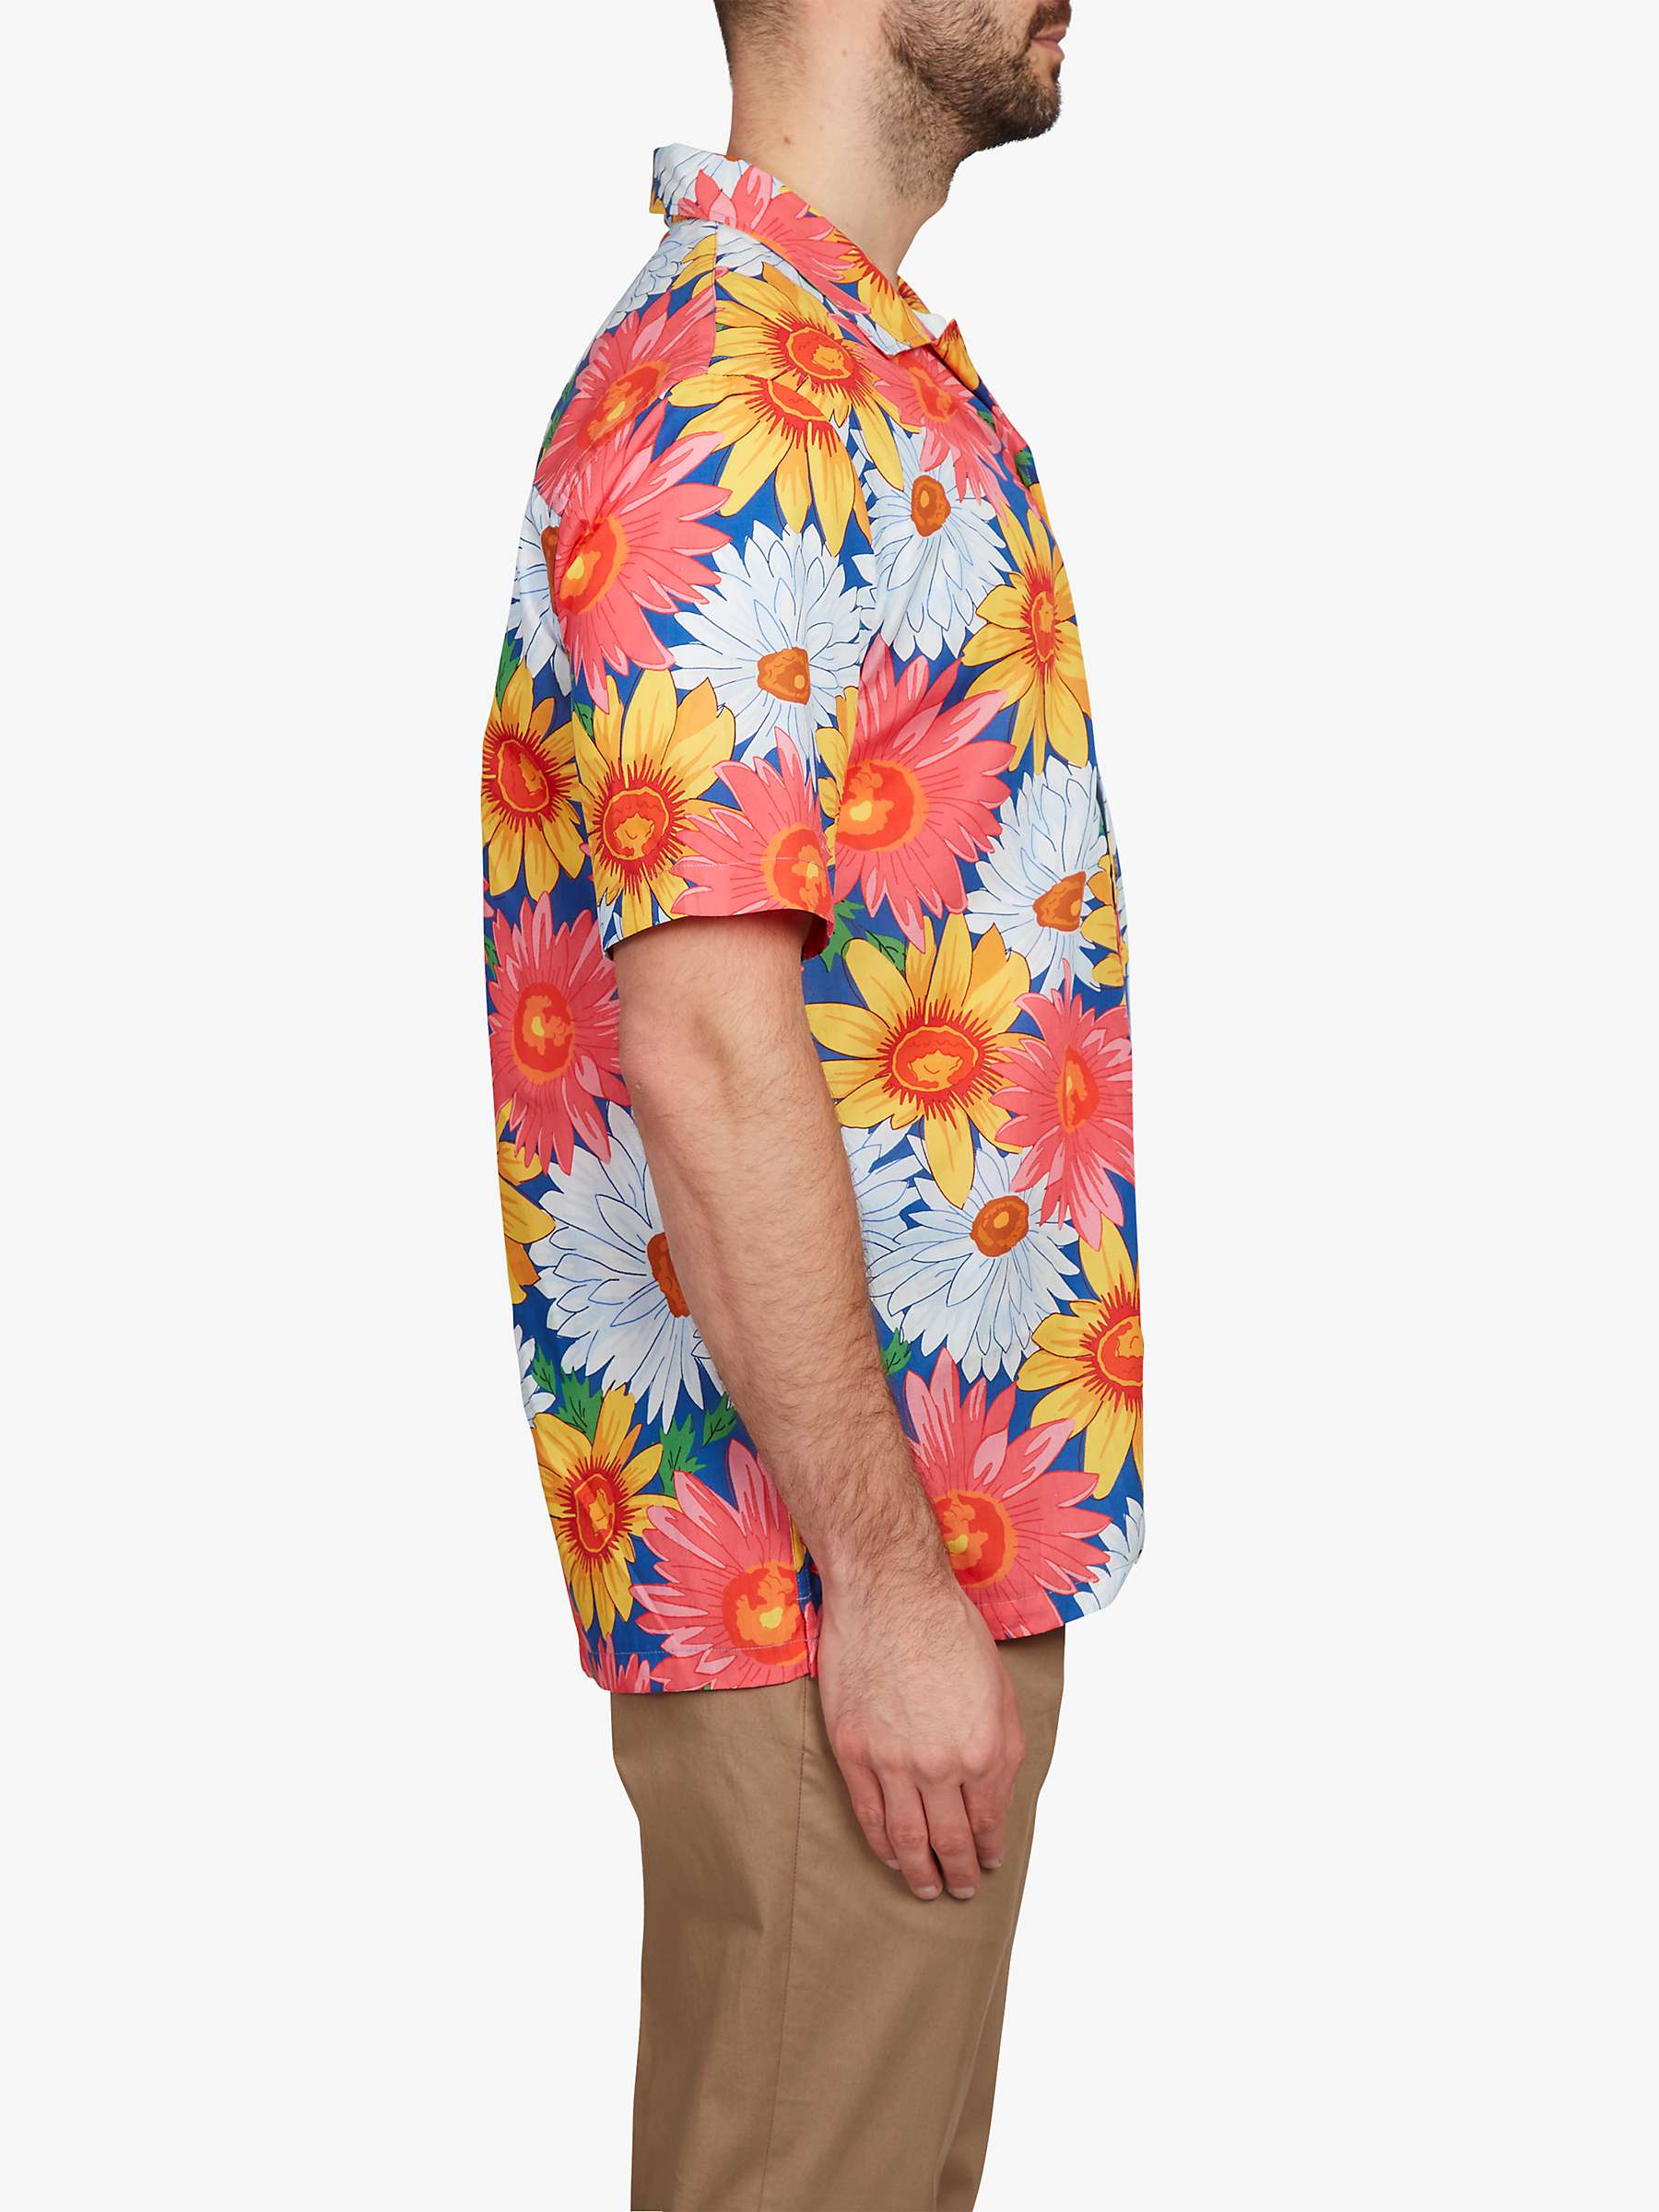 Buy Simon Carter Flower Short Sleeved Shirt, Multi Online at johnlewis.com